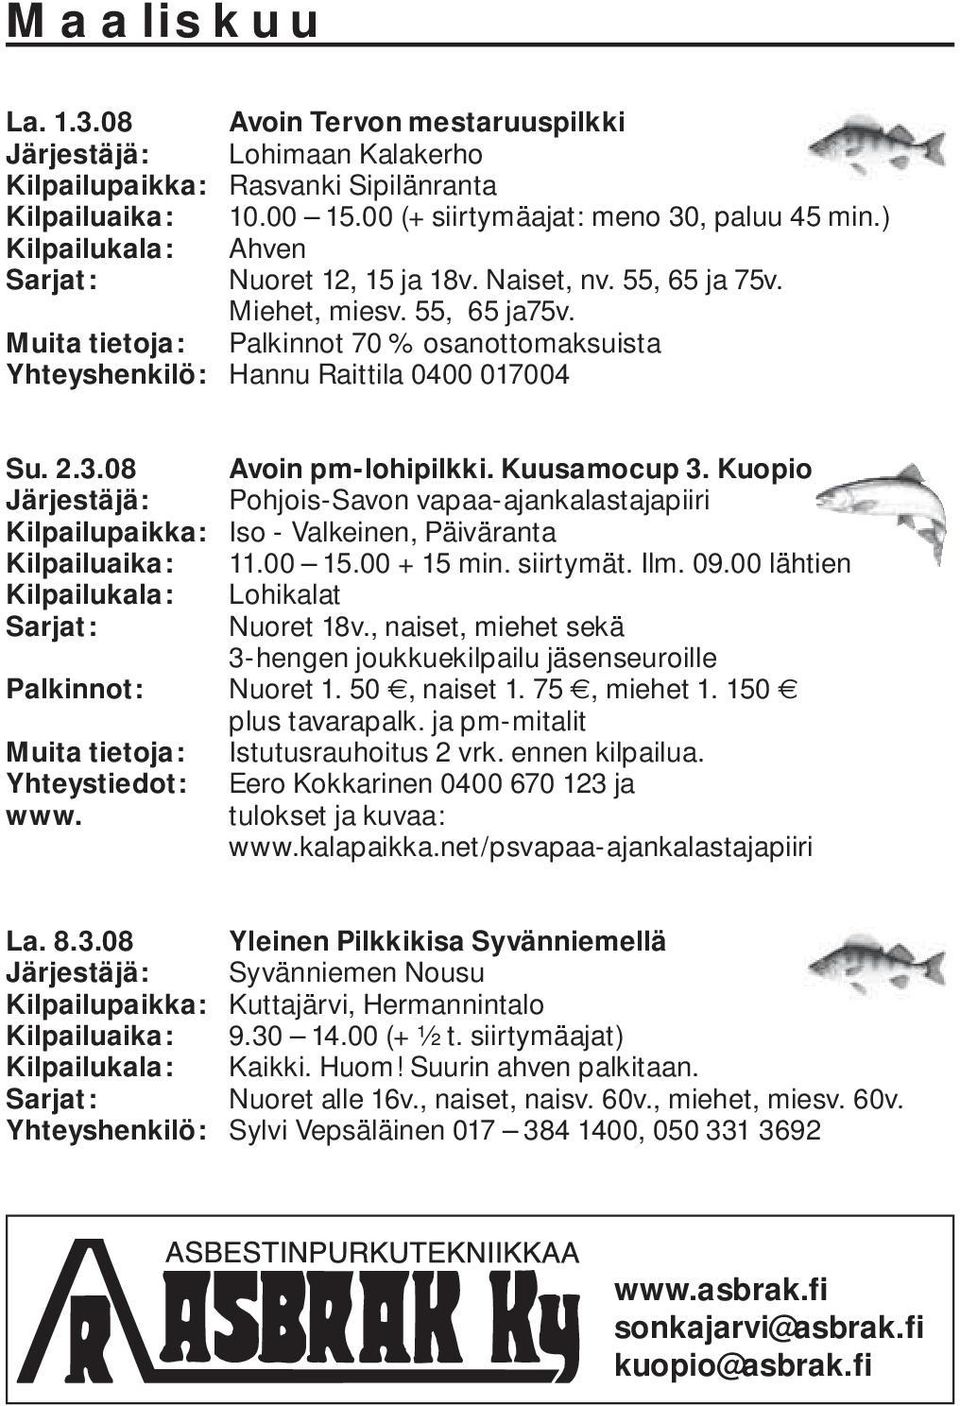 08 Avoin pm-lohipilkki. Kuusamocup 3. Kuopio Järjestäjä: Pohjois-Savon vapaa-ajankalastajapiiri Kilpailupaikka: Iso - Valkeinen, Päiväranta Kilpailuaika: 11.00 15.00 + 15 min. siirtymät. Ilm. 09.